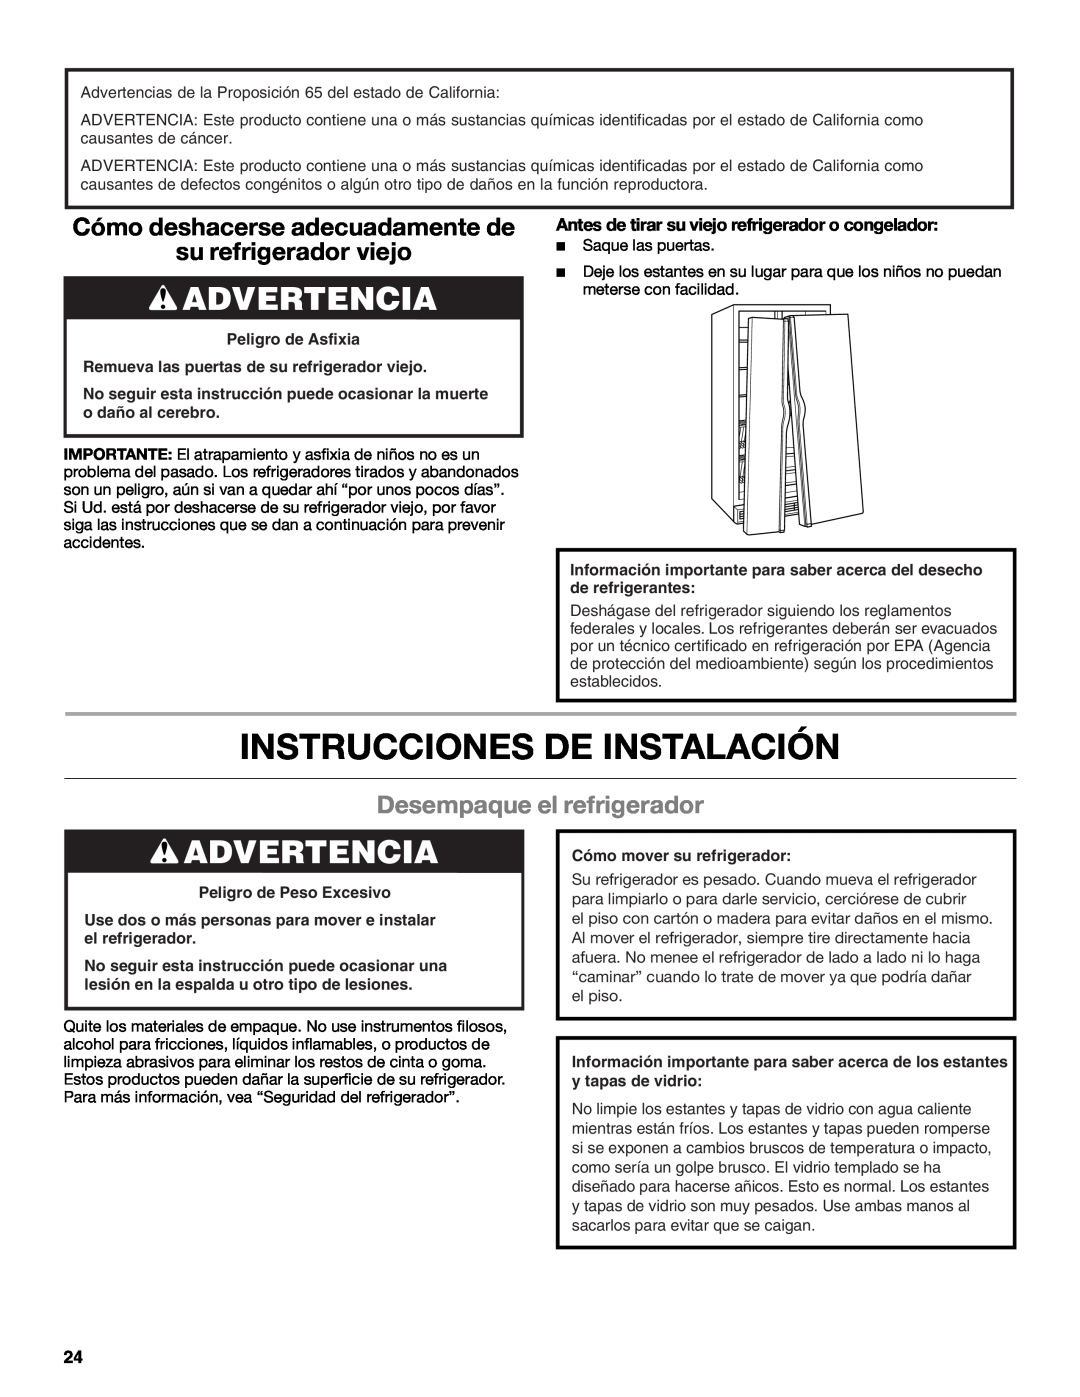 Whirlpool ED2KHAXVB Instrucciones De Instalación, Advertencia, Cómo deshacerse adecuadamente de su refrigerador viejo 